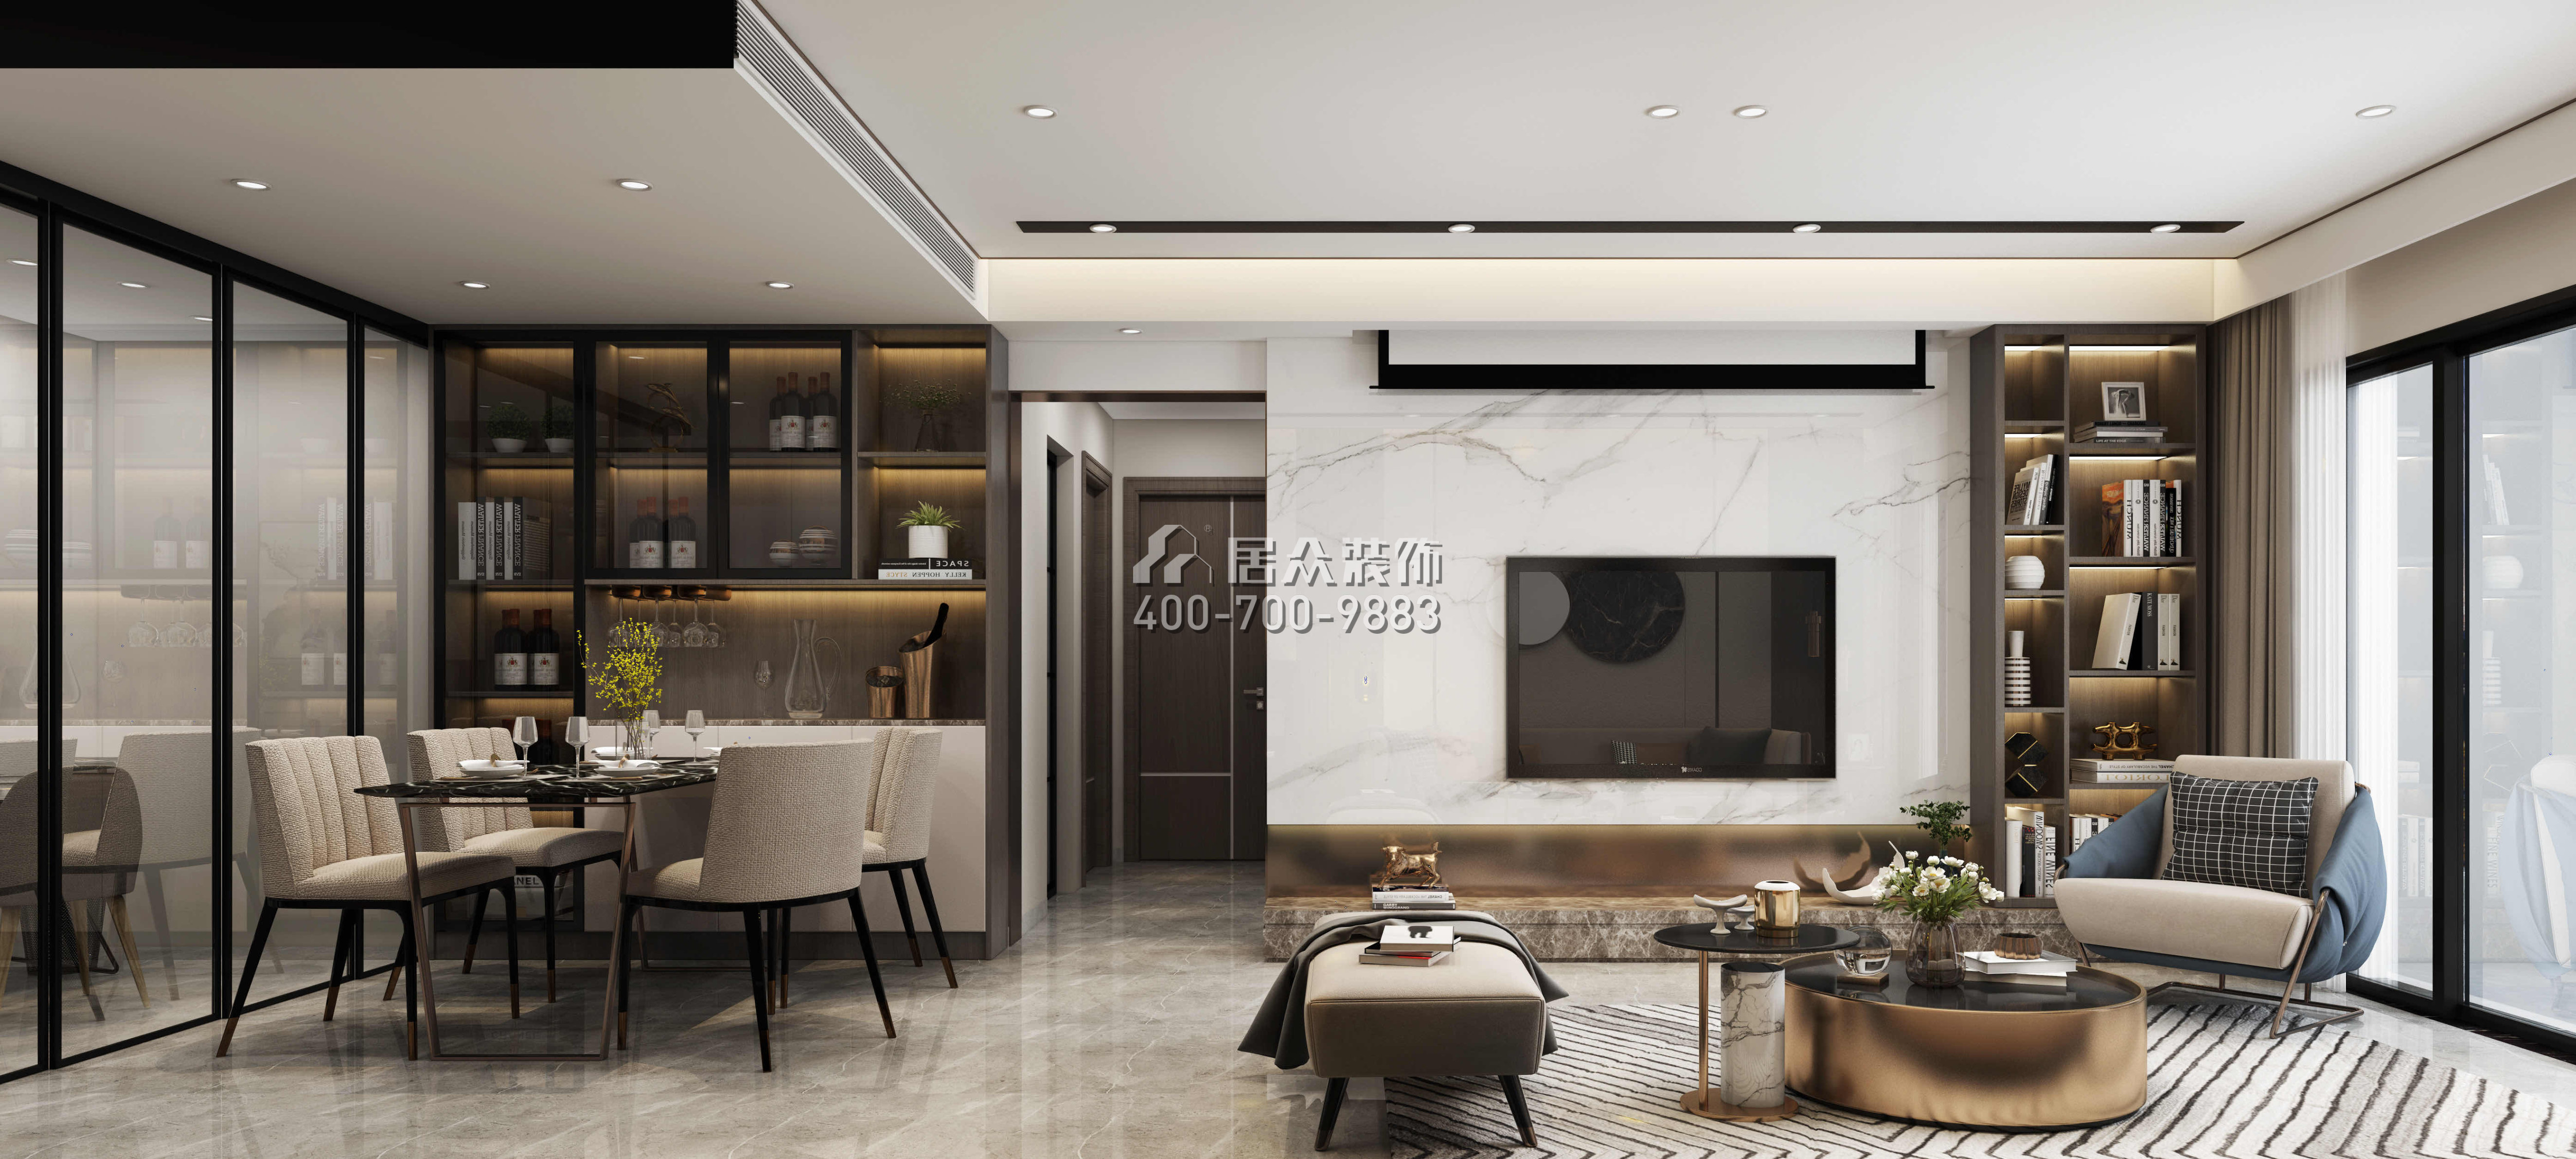 香逸名园105平方米现代简约风格平层户型客厅装修效果图